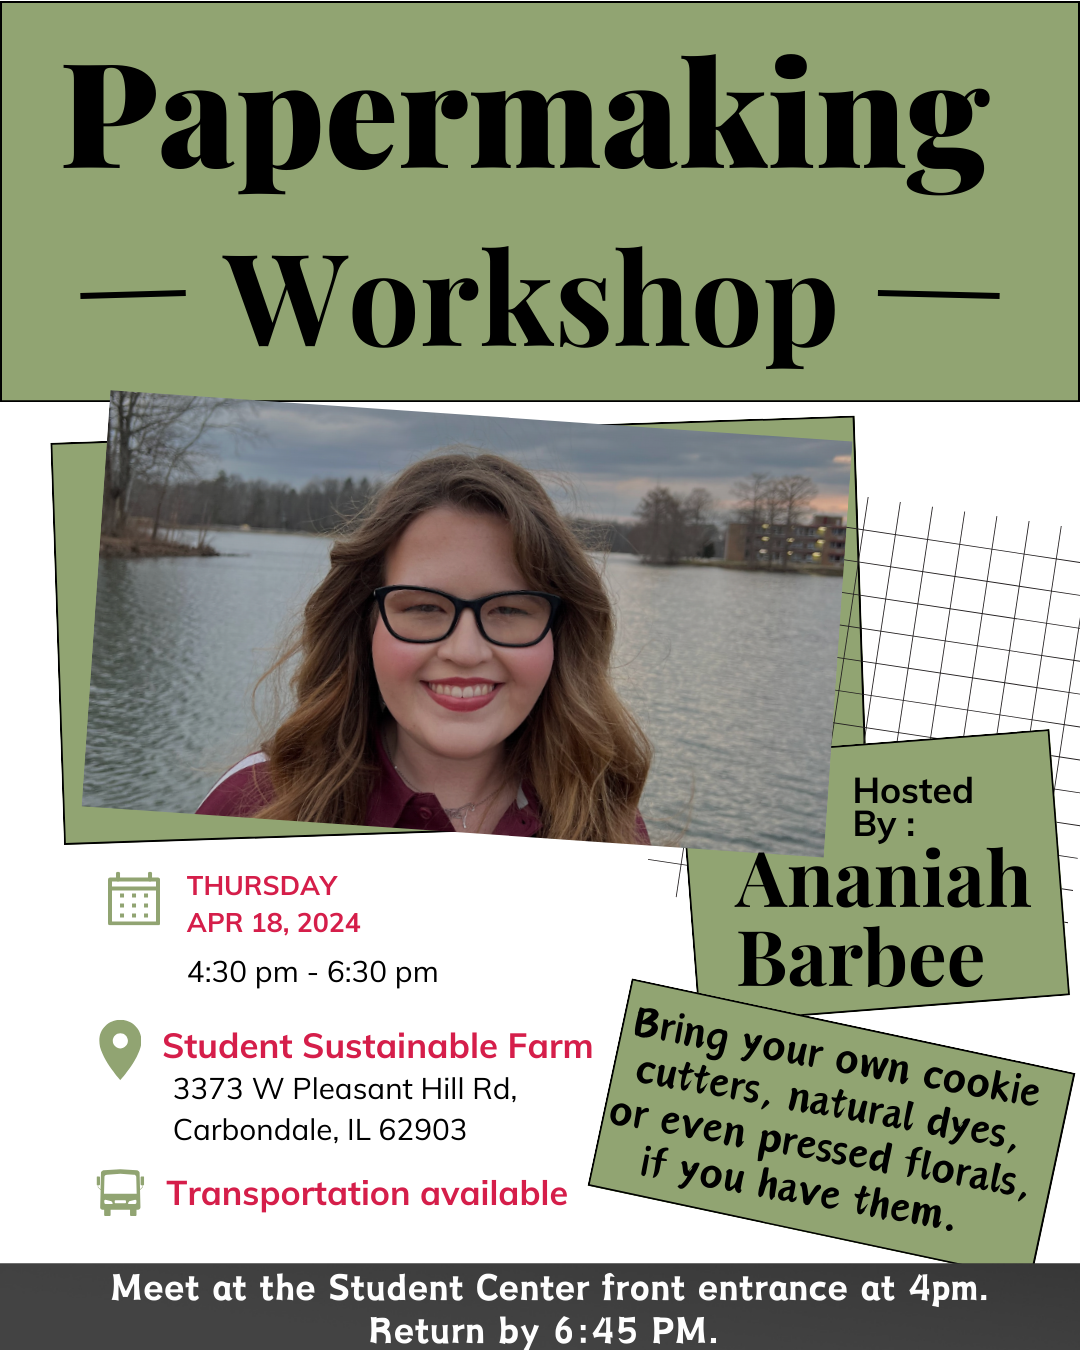 Papermaking workshop flyer